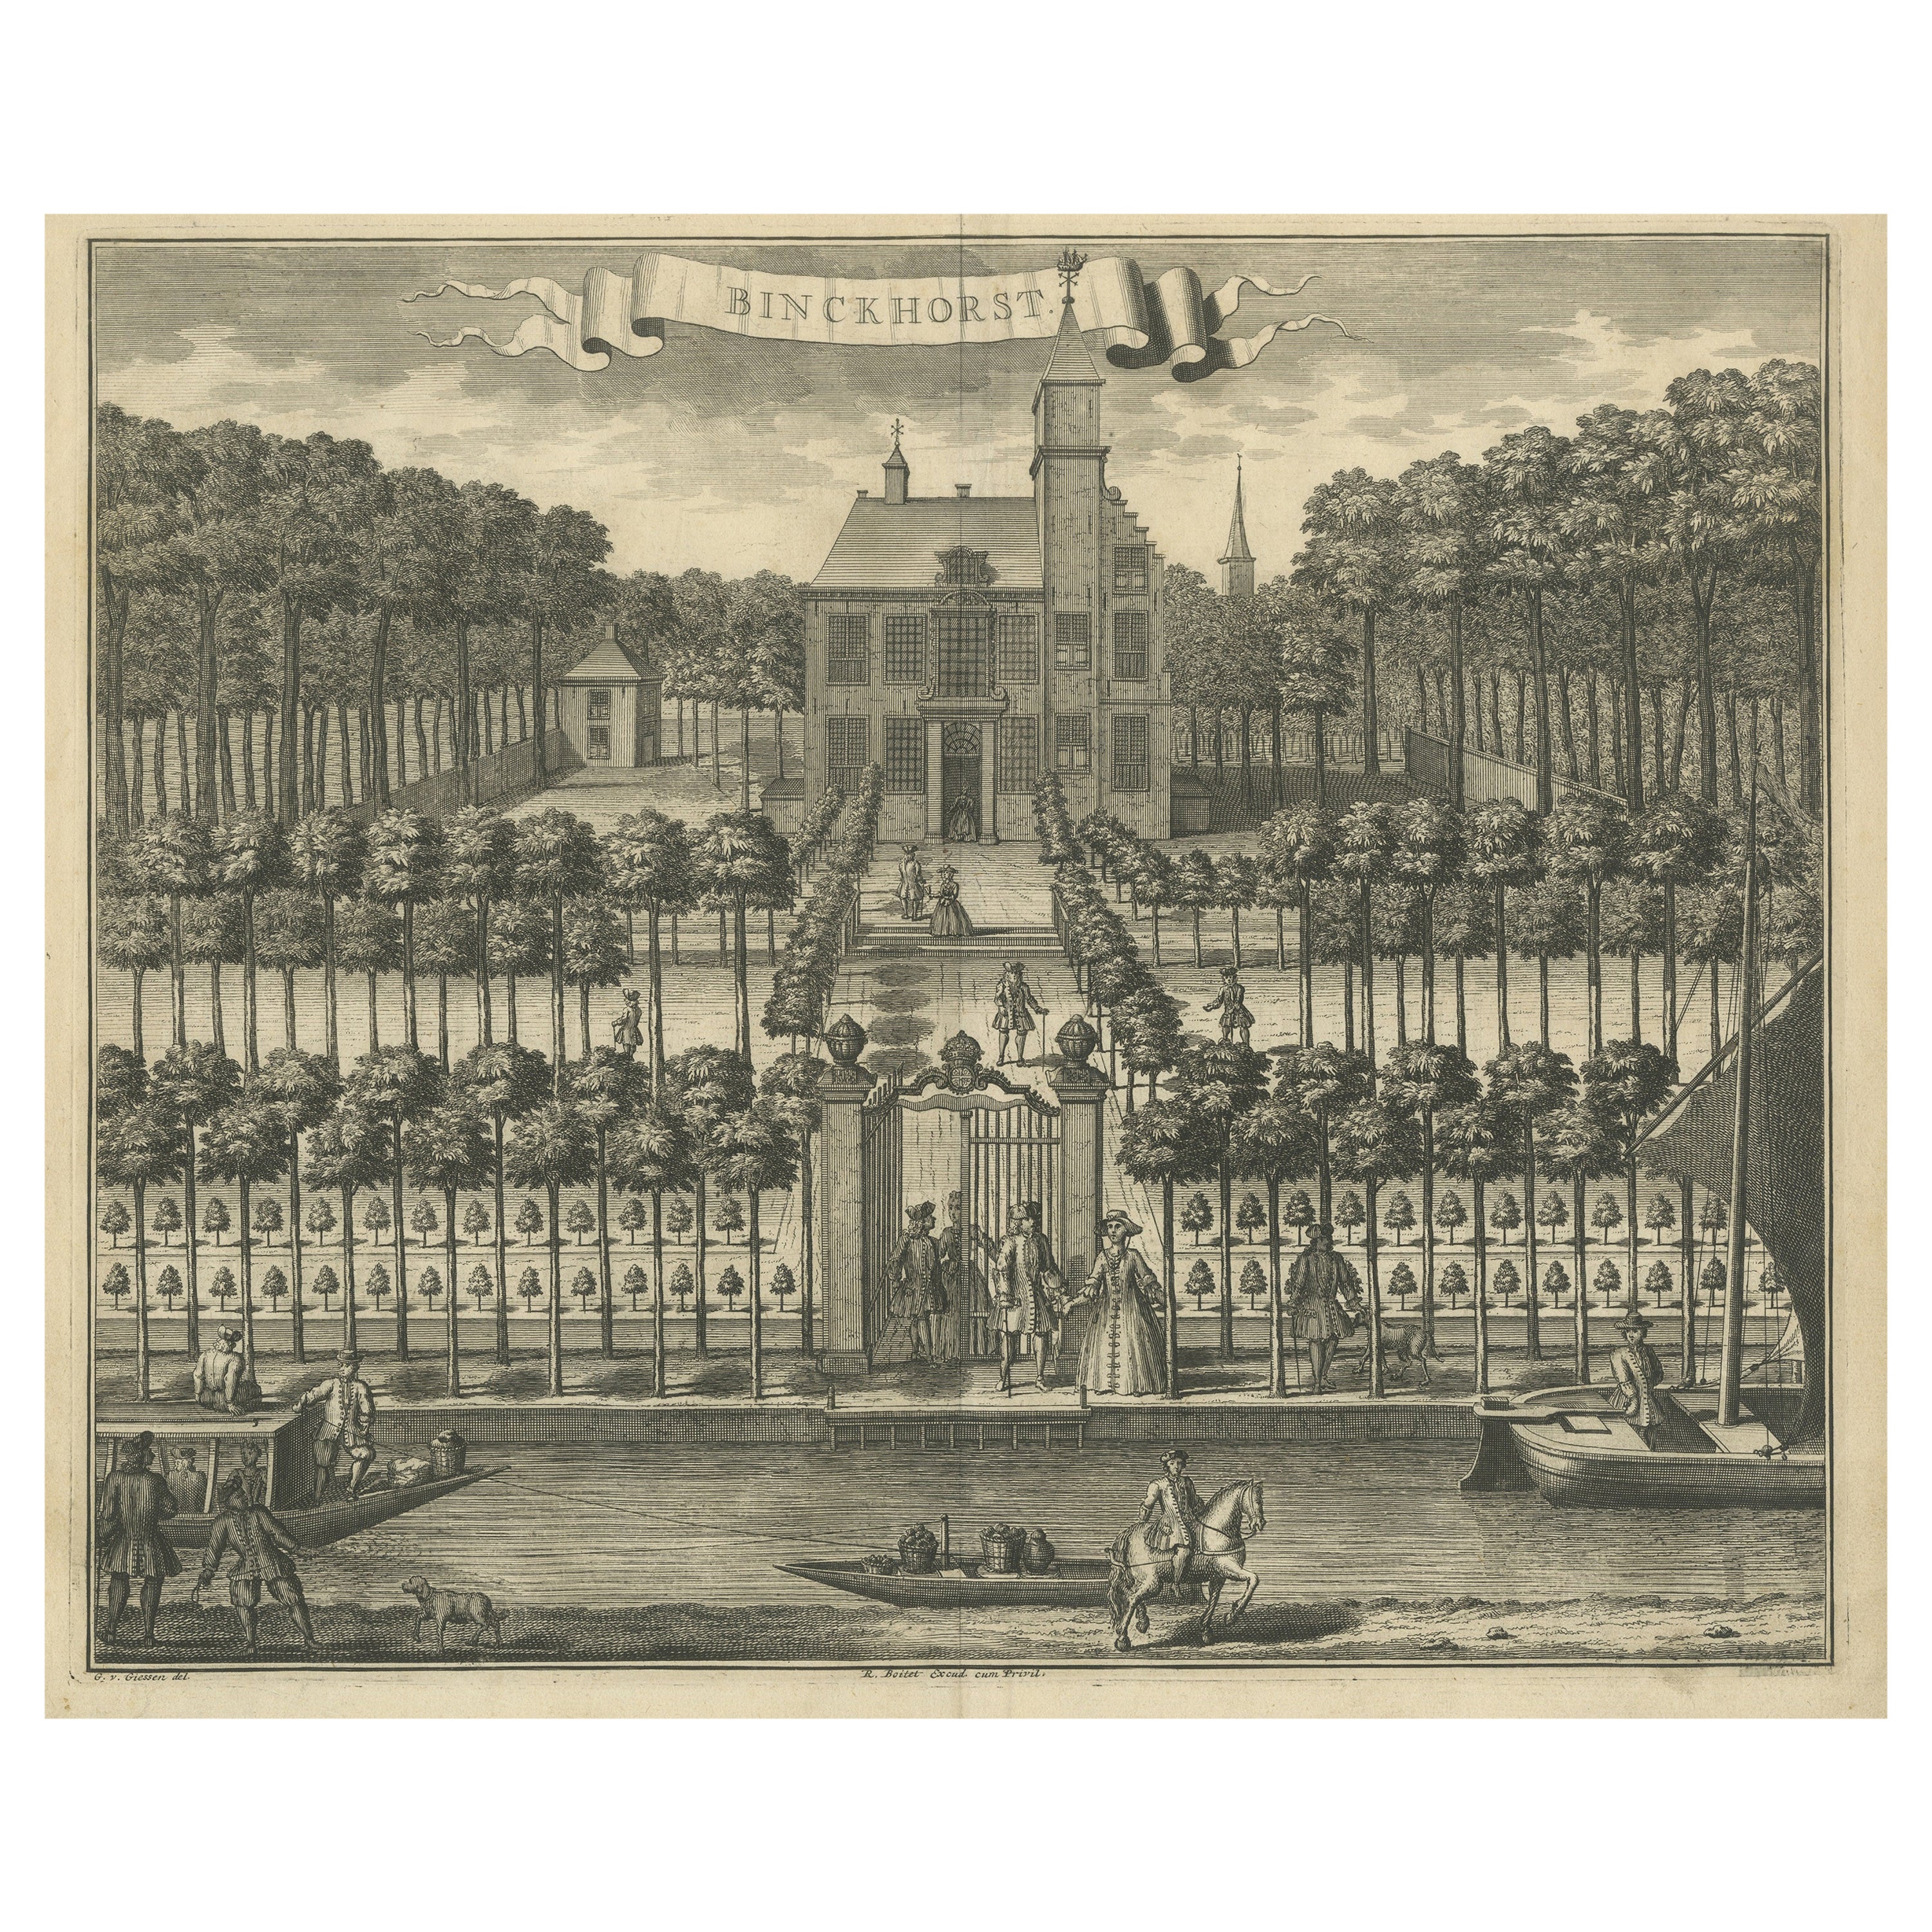 Antique Print of Binckhorst Castle, The Hague For Sale